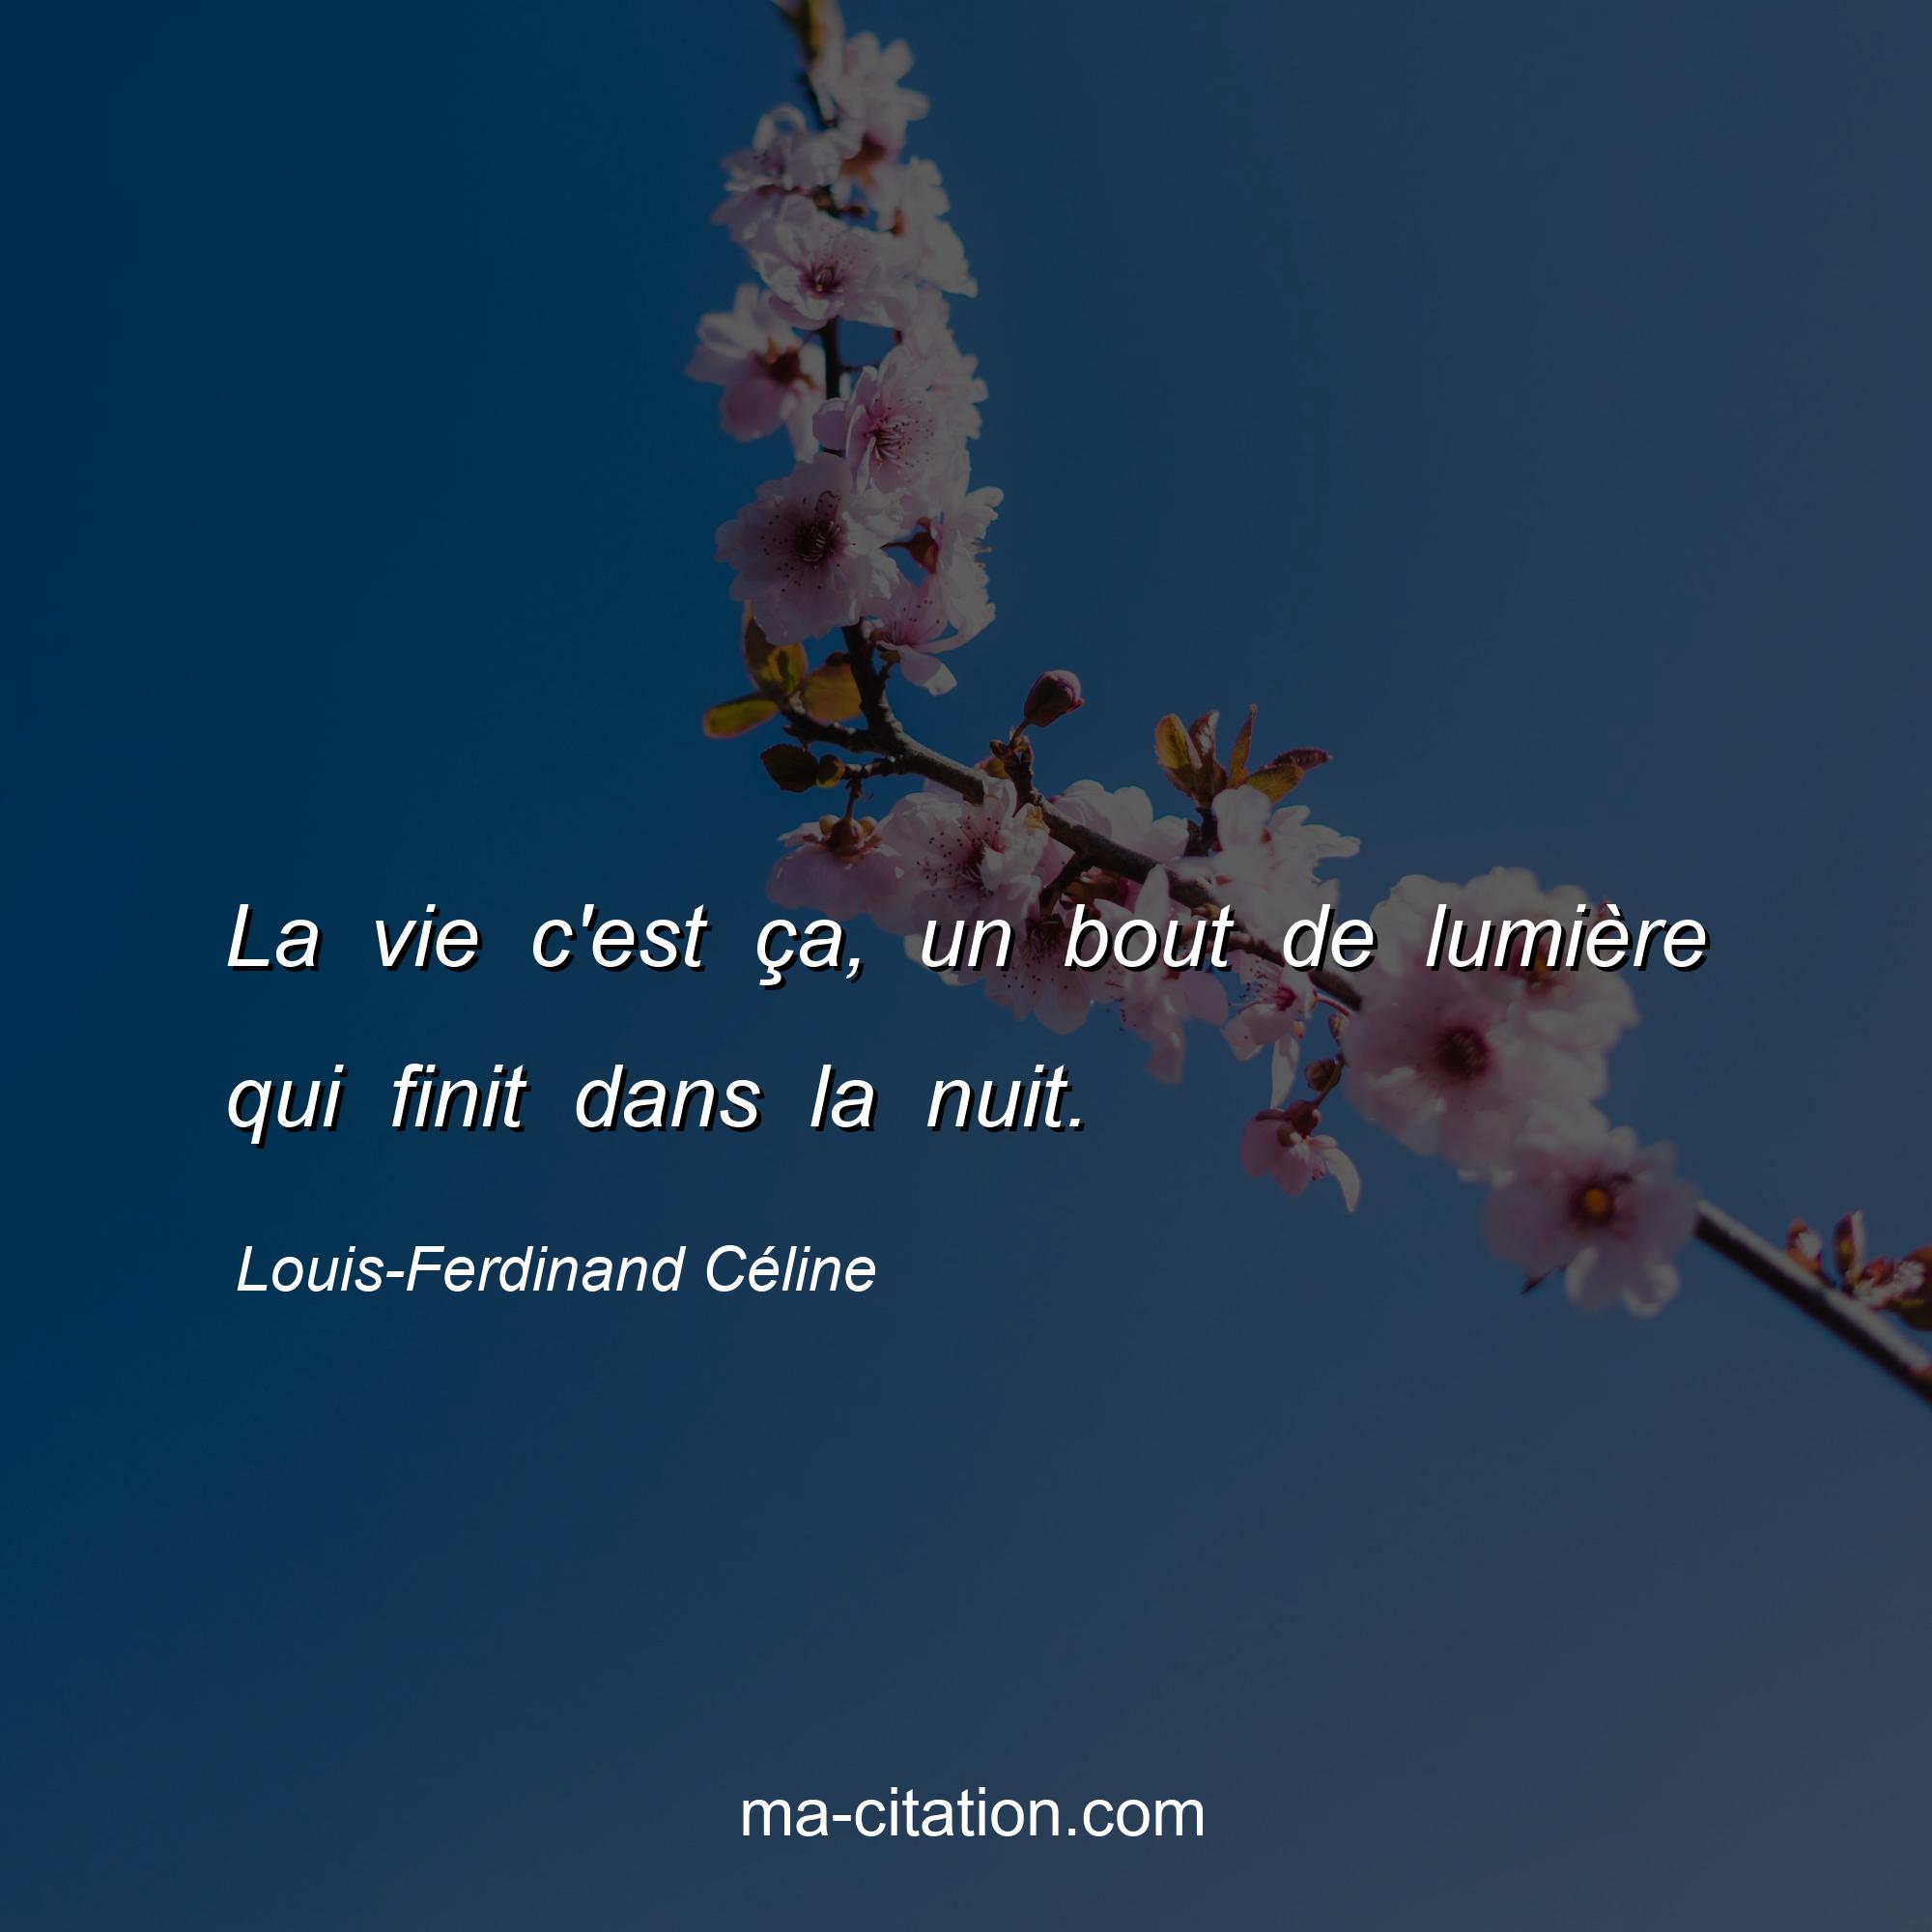 Louis-Ferdinand Céline : La vie c'est ça, un bout de lumière qui finit dans la nuit.